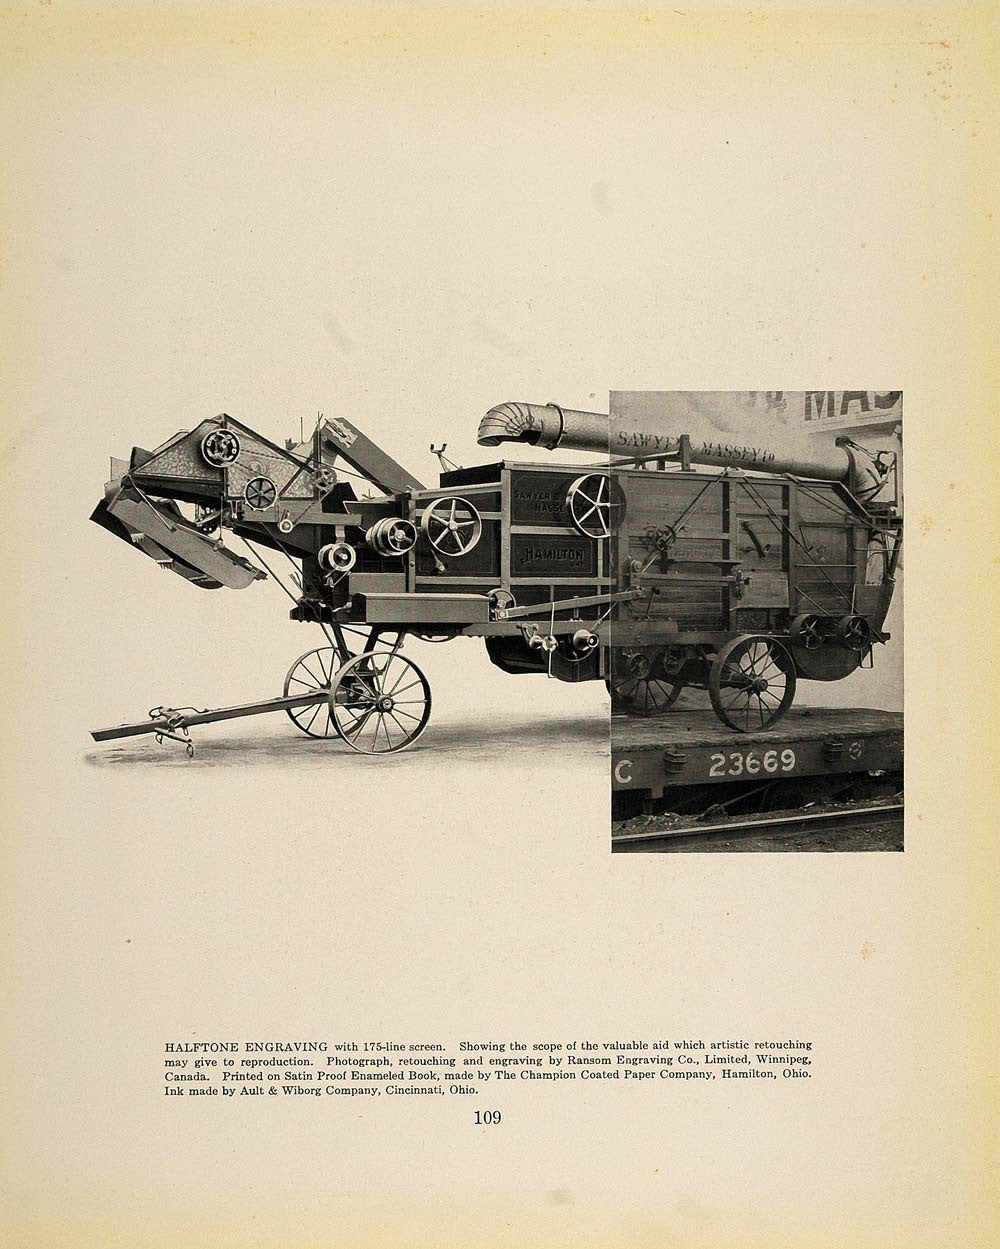 1913 Print Antique Sawyer & Massey Thresher Machine - ORIGINAL HISTORIC GAC1 - Period Paper
